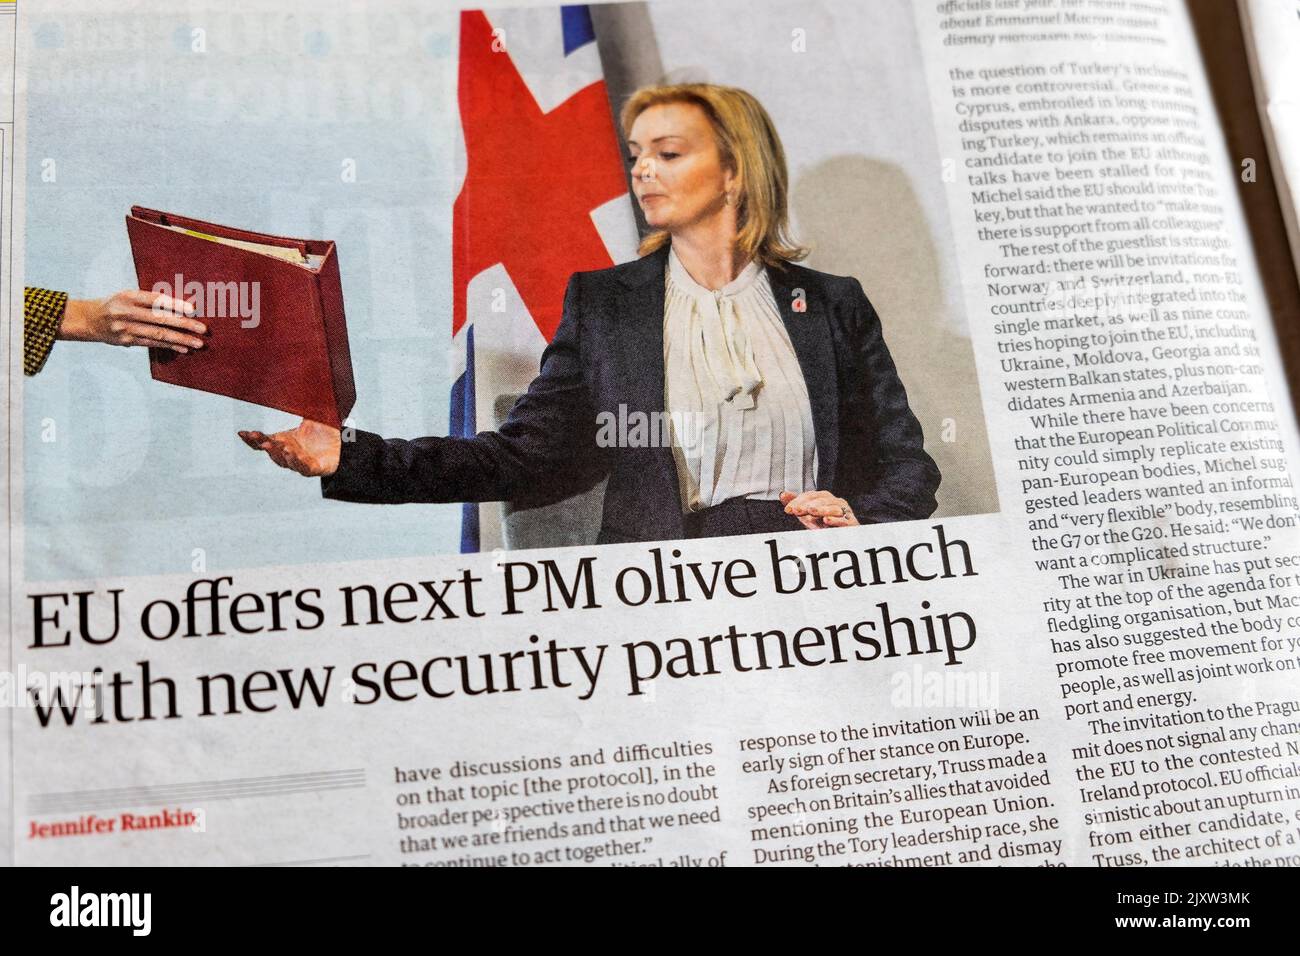 'L'UE offre la prossima filiale PM olive con una nuova partnership per la sicurezza' articolo del quotidiano Guardian il 3 settembre 2022 Londra Inghilterra Regno Unito Gran Bretagna Foto Stock